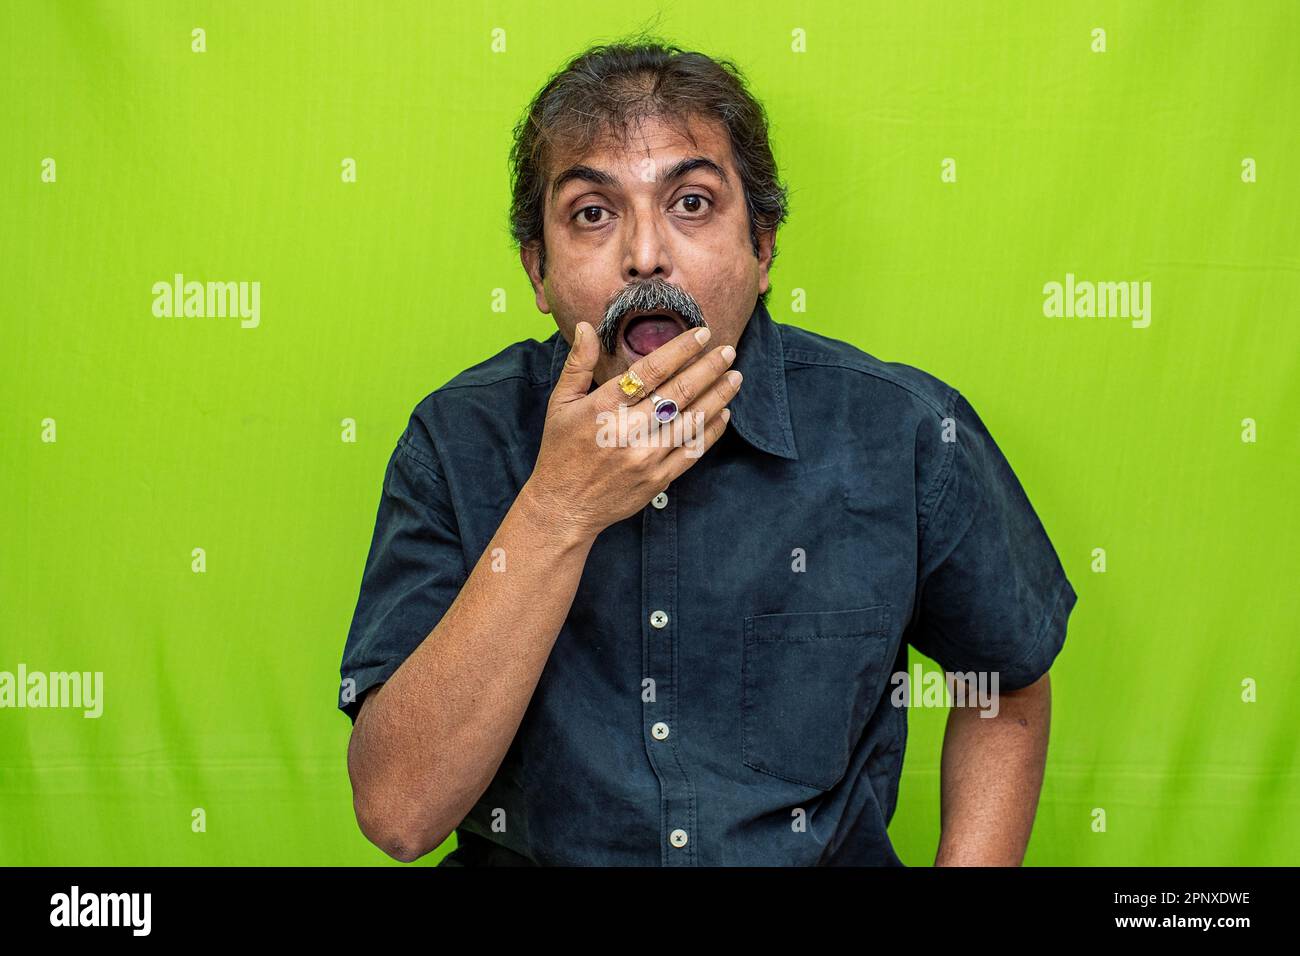 Un uomo d'affari ben vestito in una camicia nera è visto in piedi contro uno schermo verde, con la mano destra sulla sua bocca in un'espressione sorpresa Foto Stock